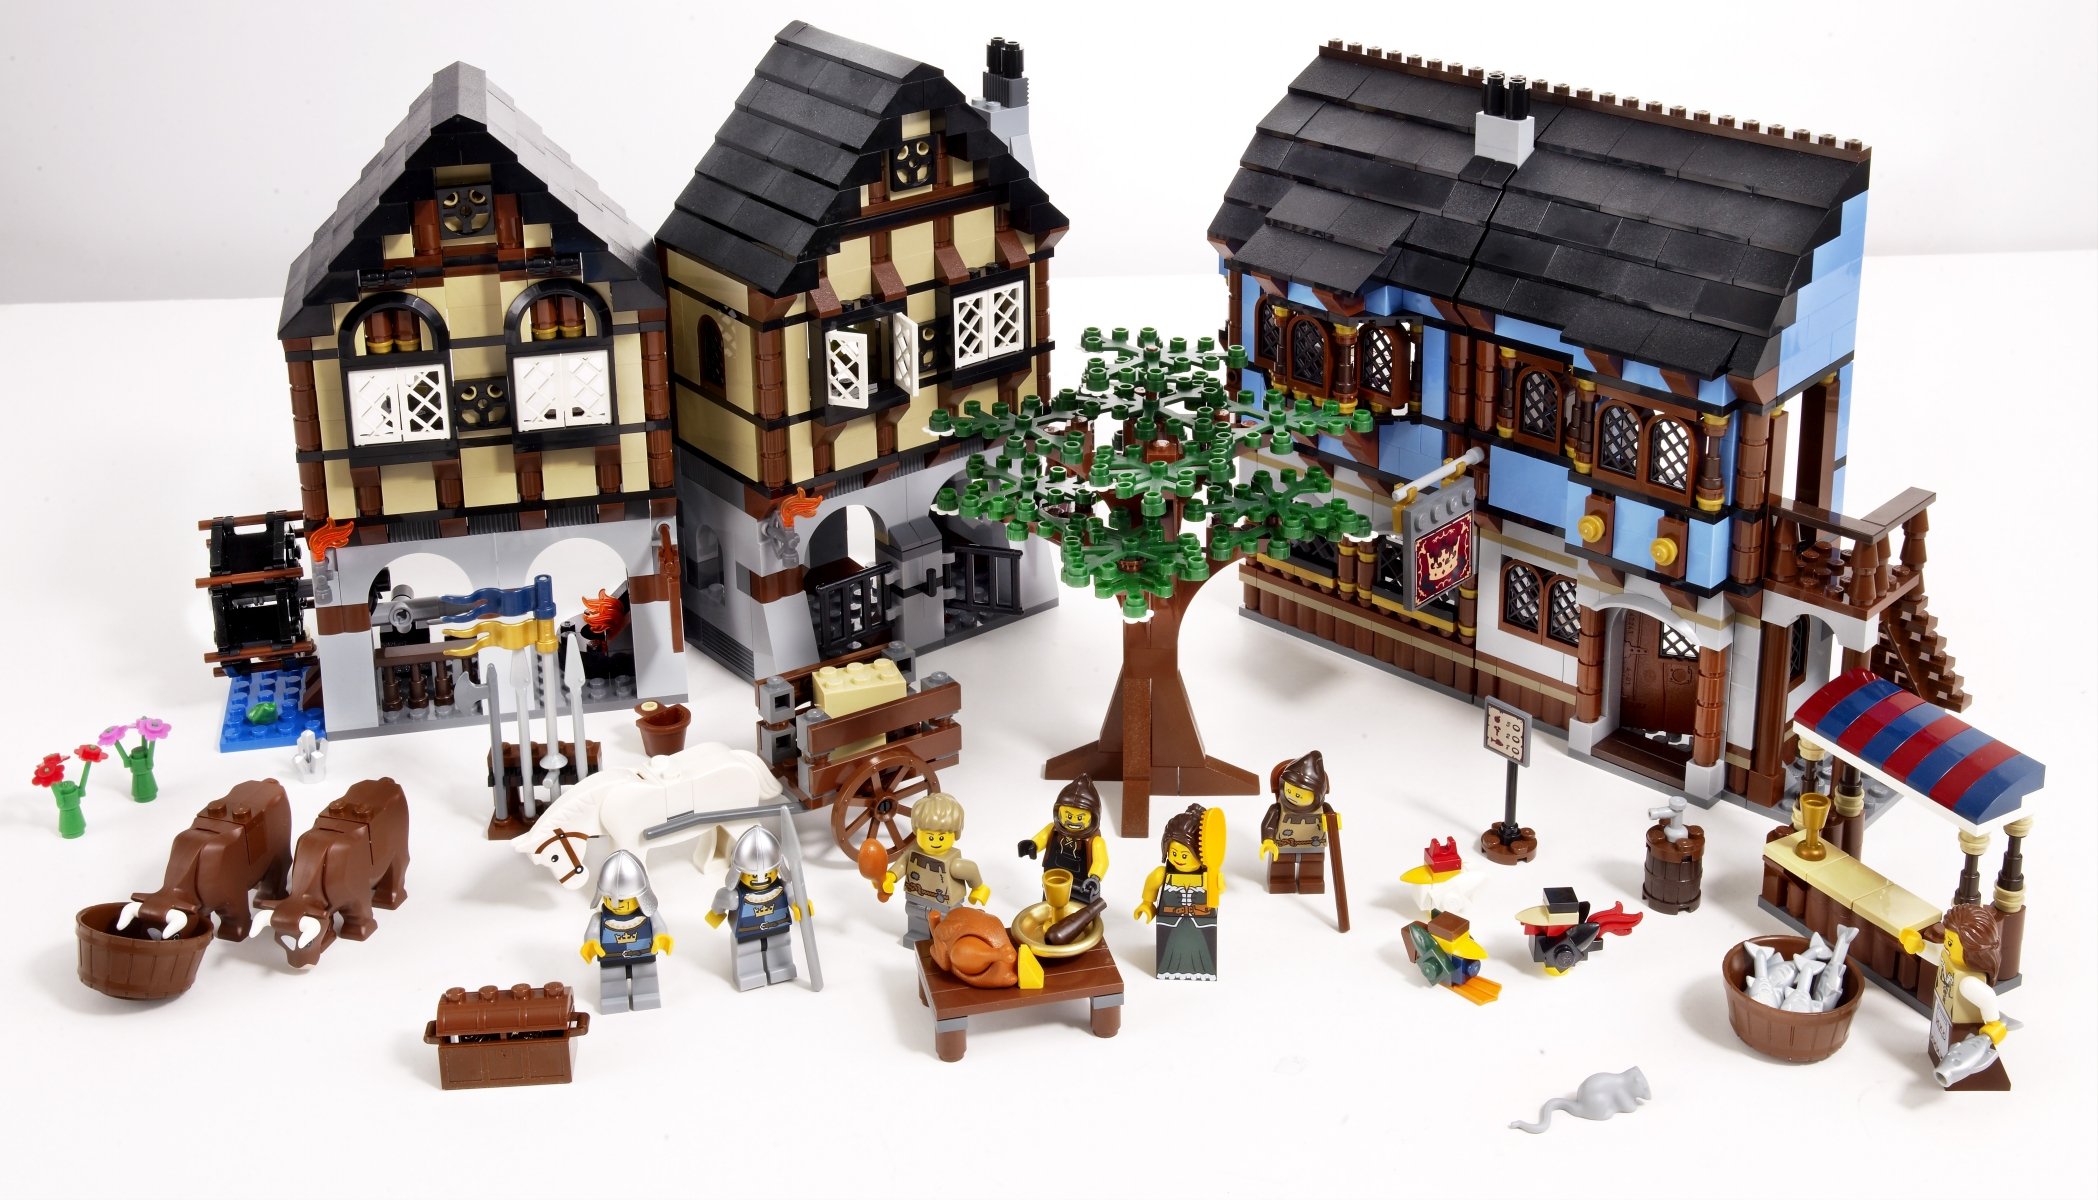 LEGO Castle Medieval Market Village (10193) - image 3 of 4